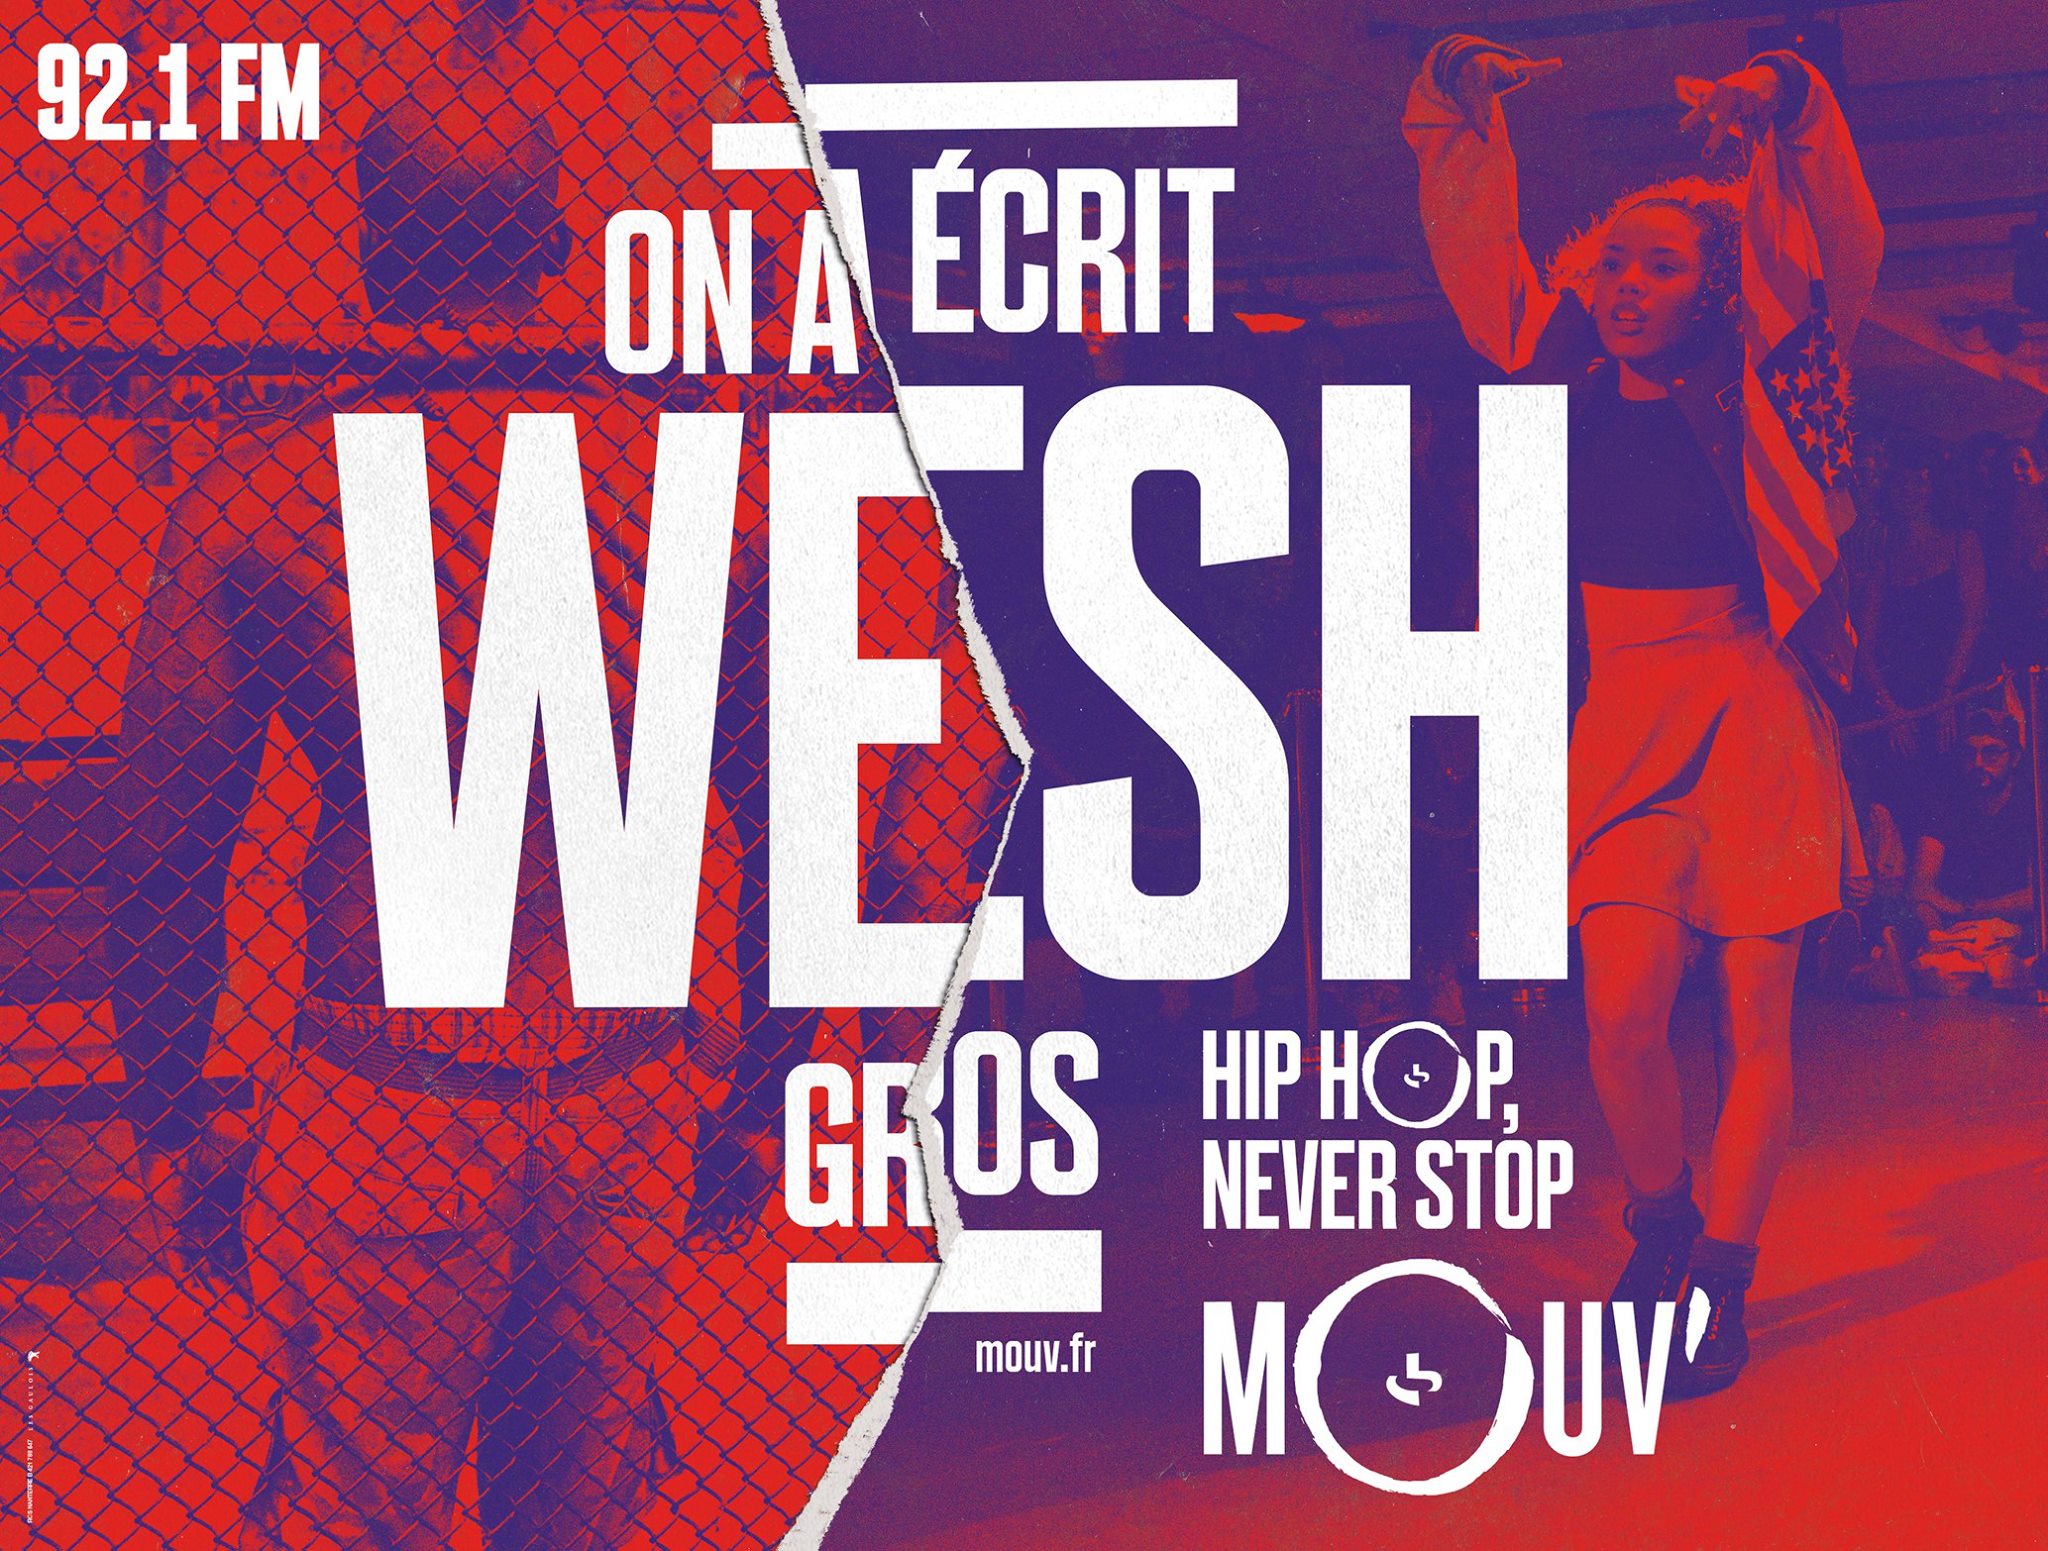 mouv-radio-hip-hop-rap-publicite-marketing-affiche-rimes-paroles-novembre-2015-agence-les-gaulois-havas-5